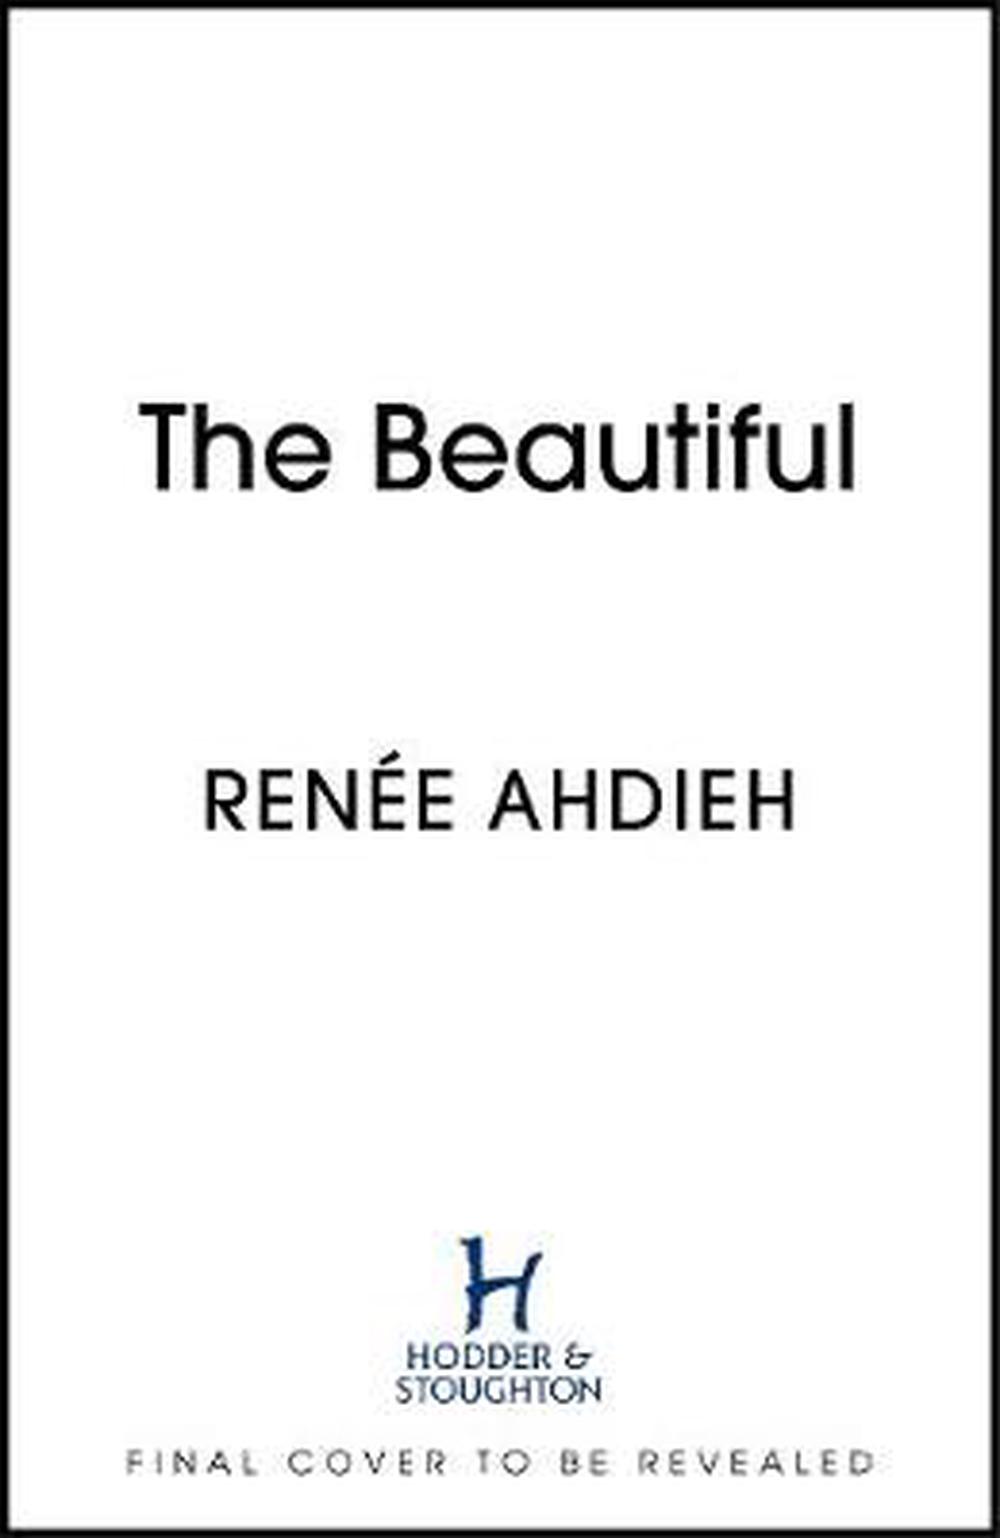 the beautiful series by renee ahdieh